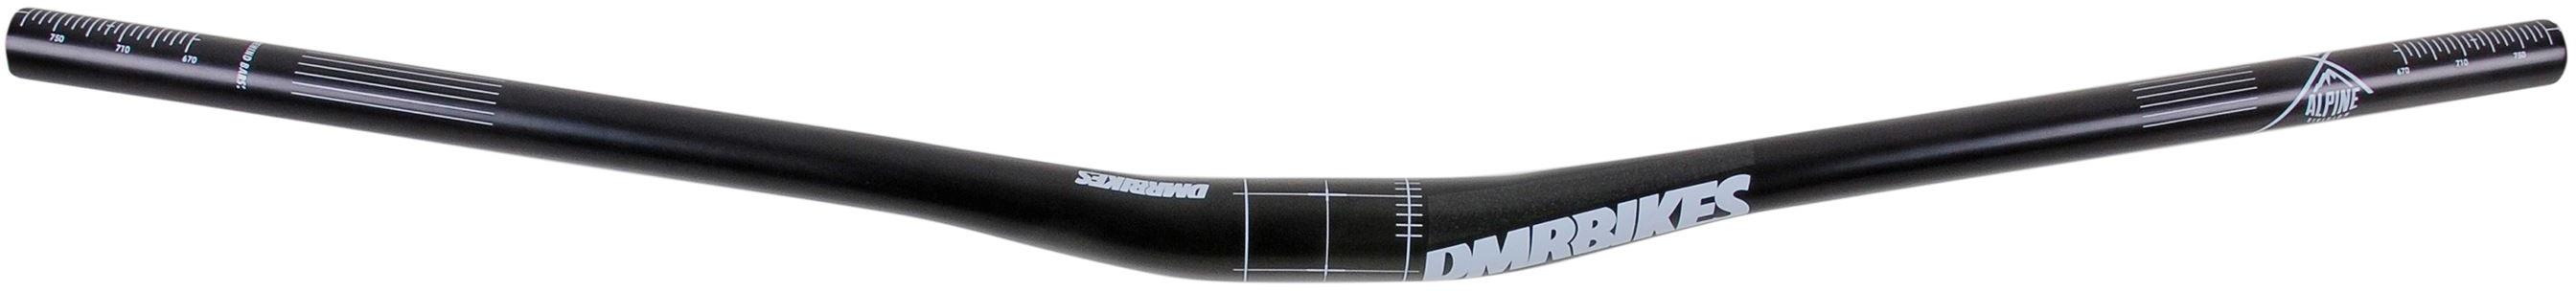 Dmr Wingbar Mk4 Riser Handlebars  Black